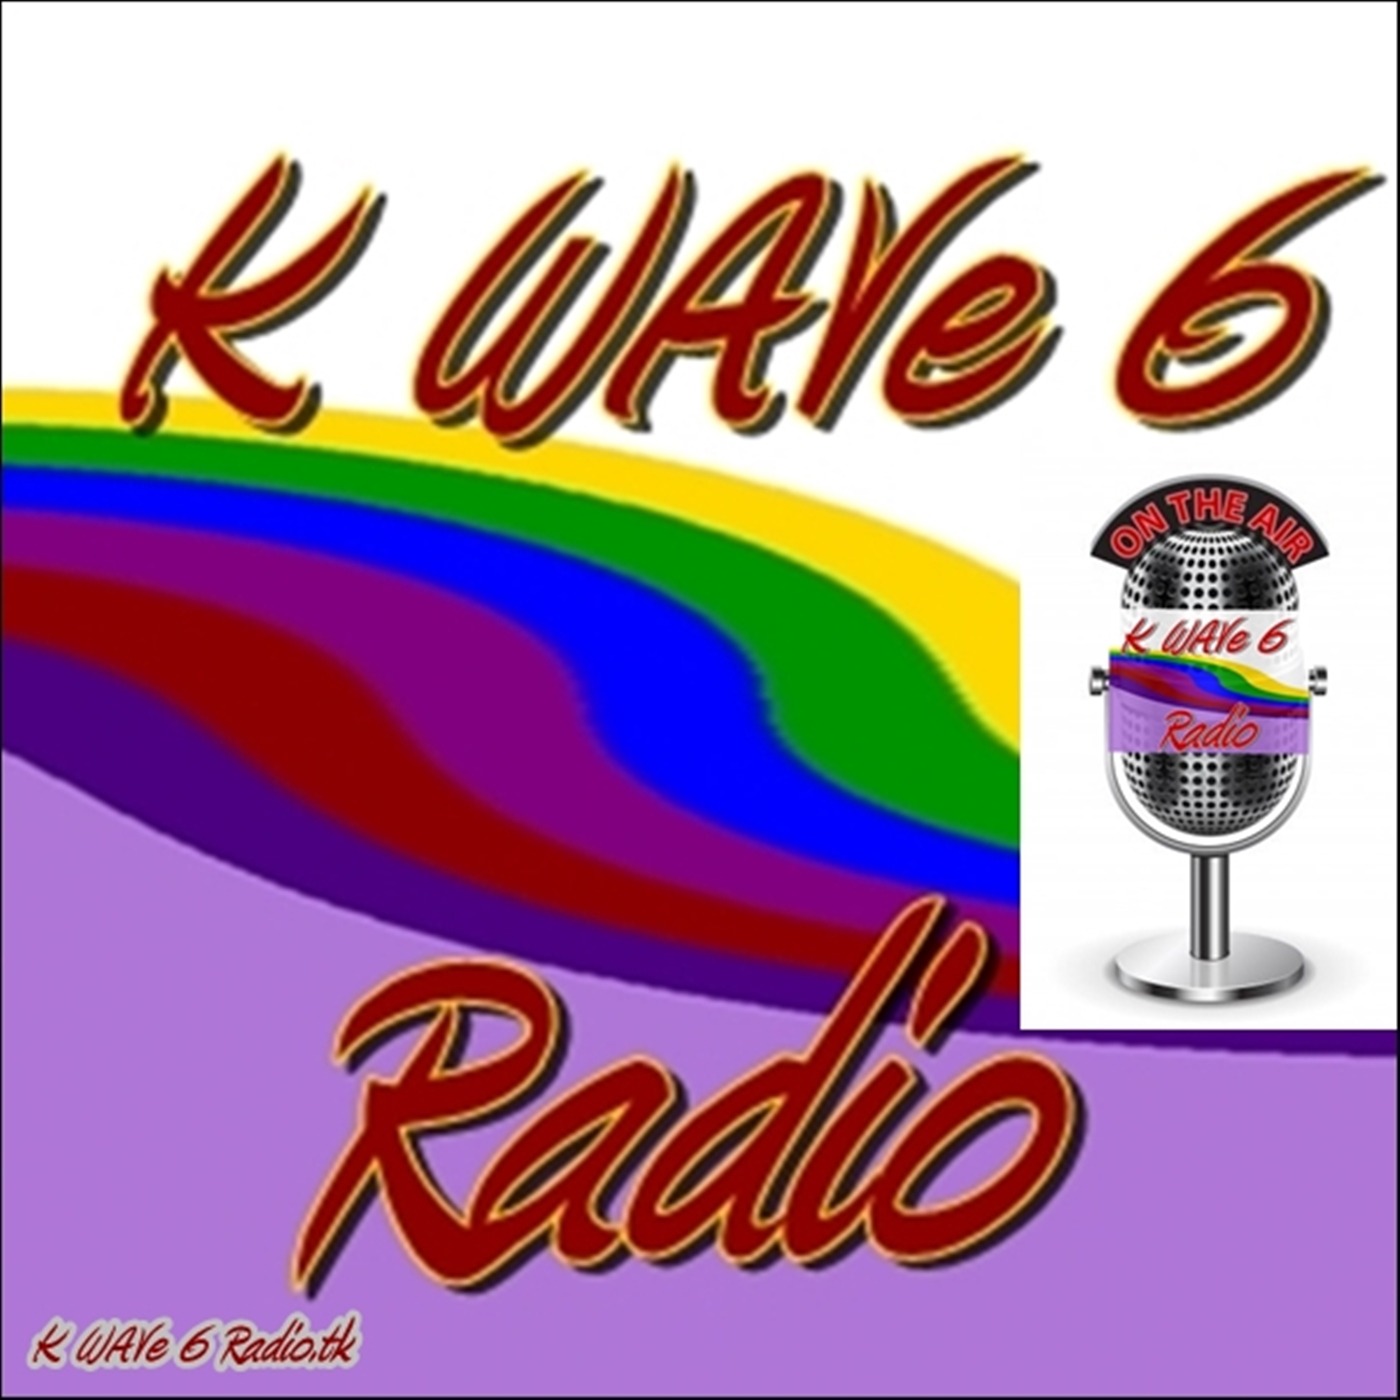 K WAVe 6 Radio's Podcast